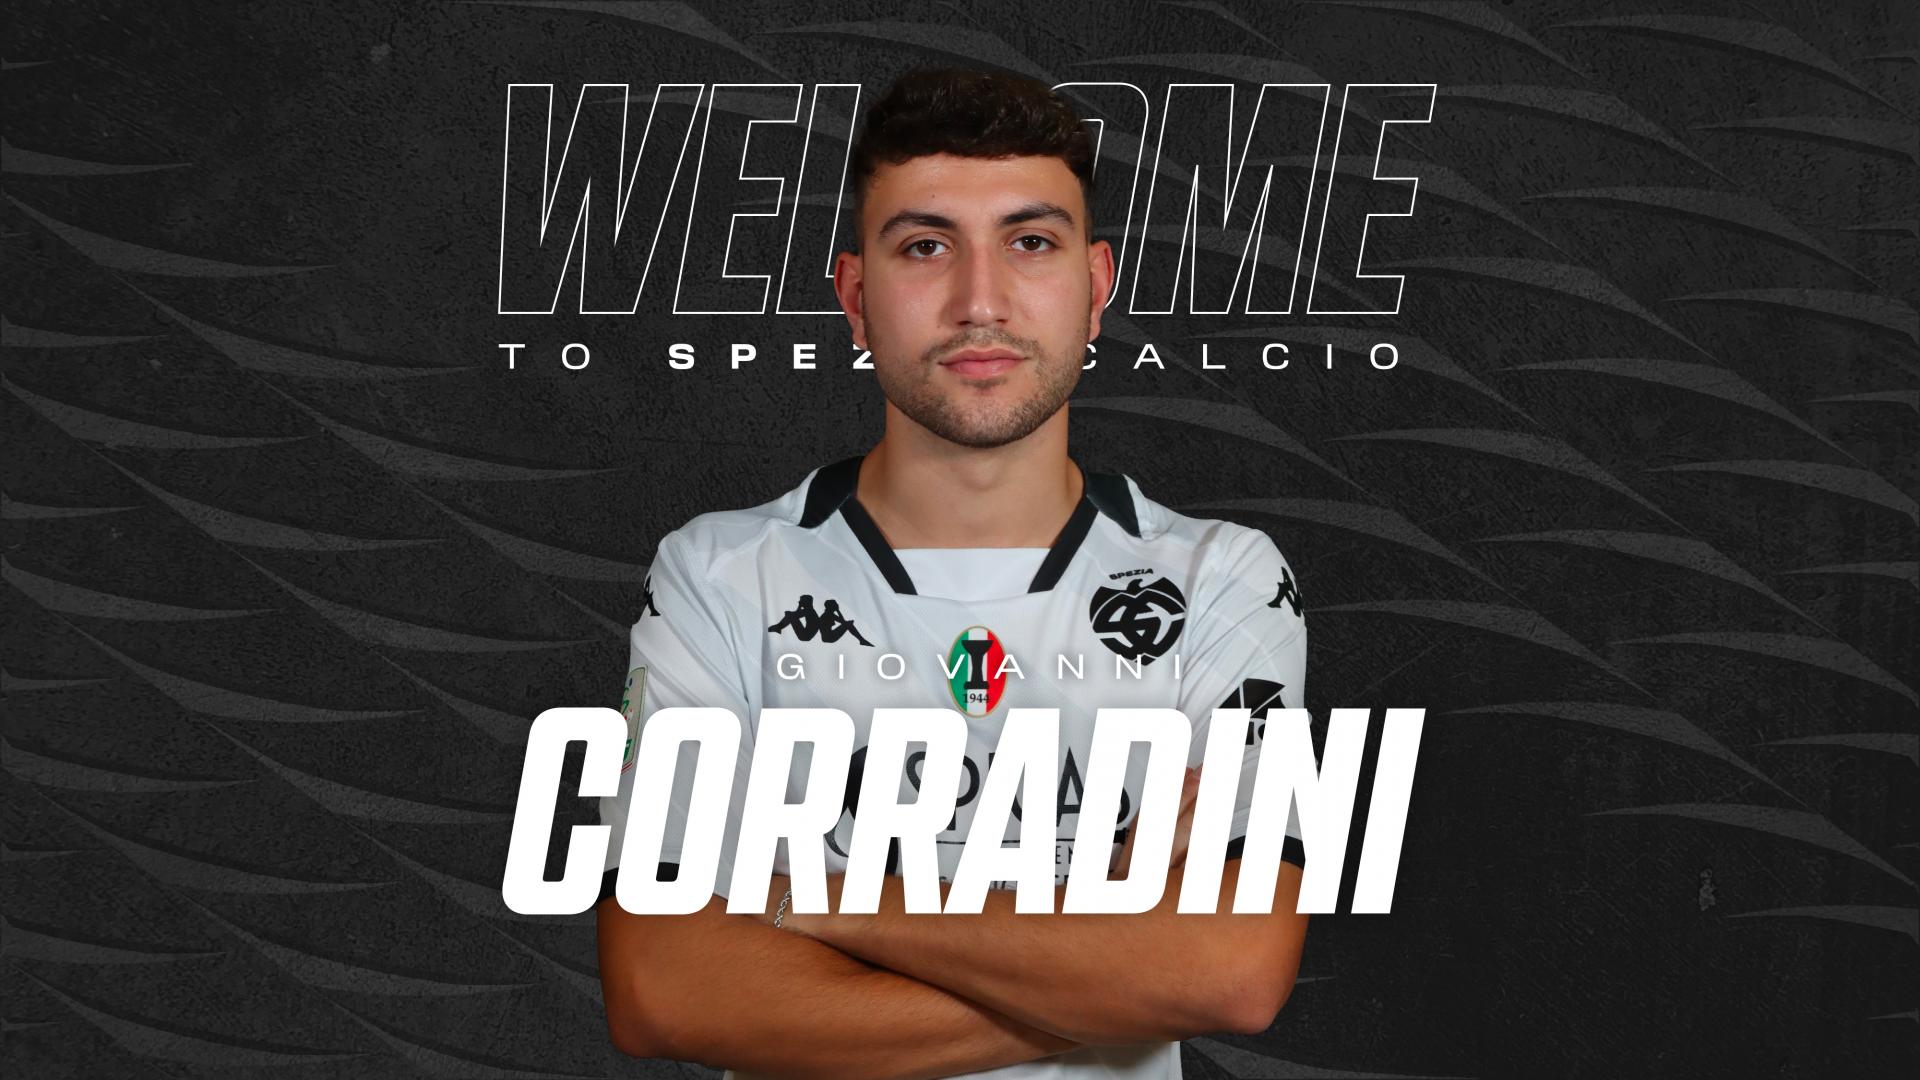 Ufficiale | Giovanni Corradini è un nuovo calciatore dello Spezia